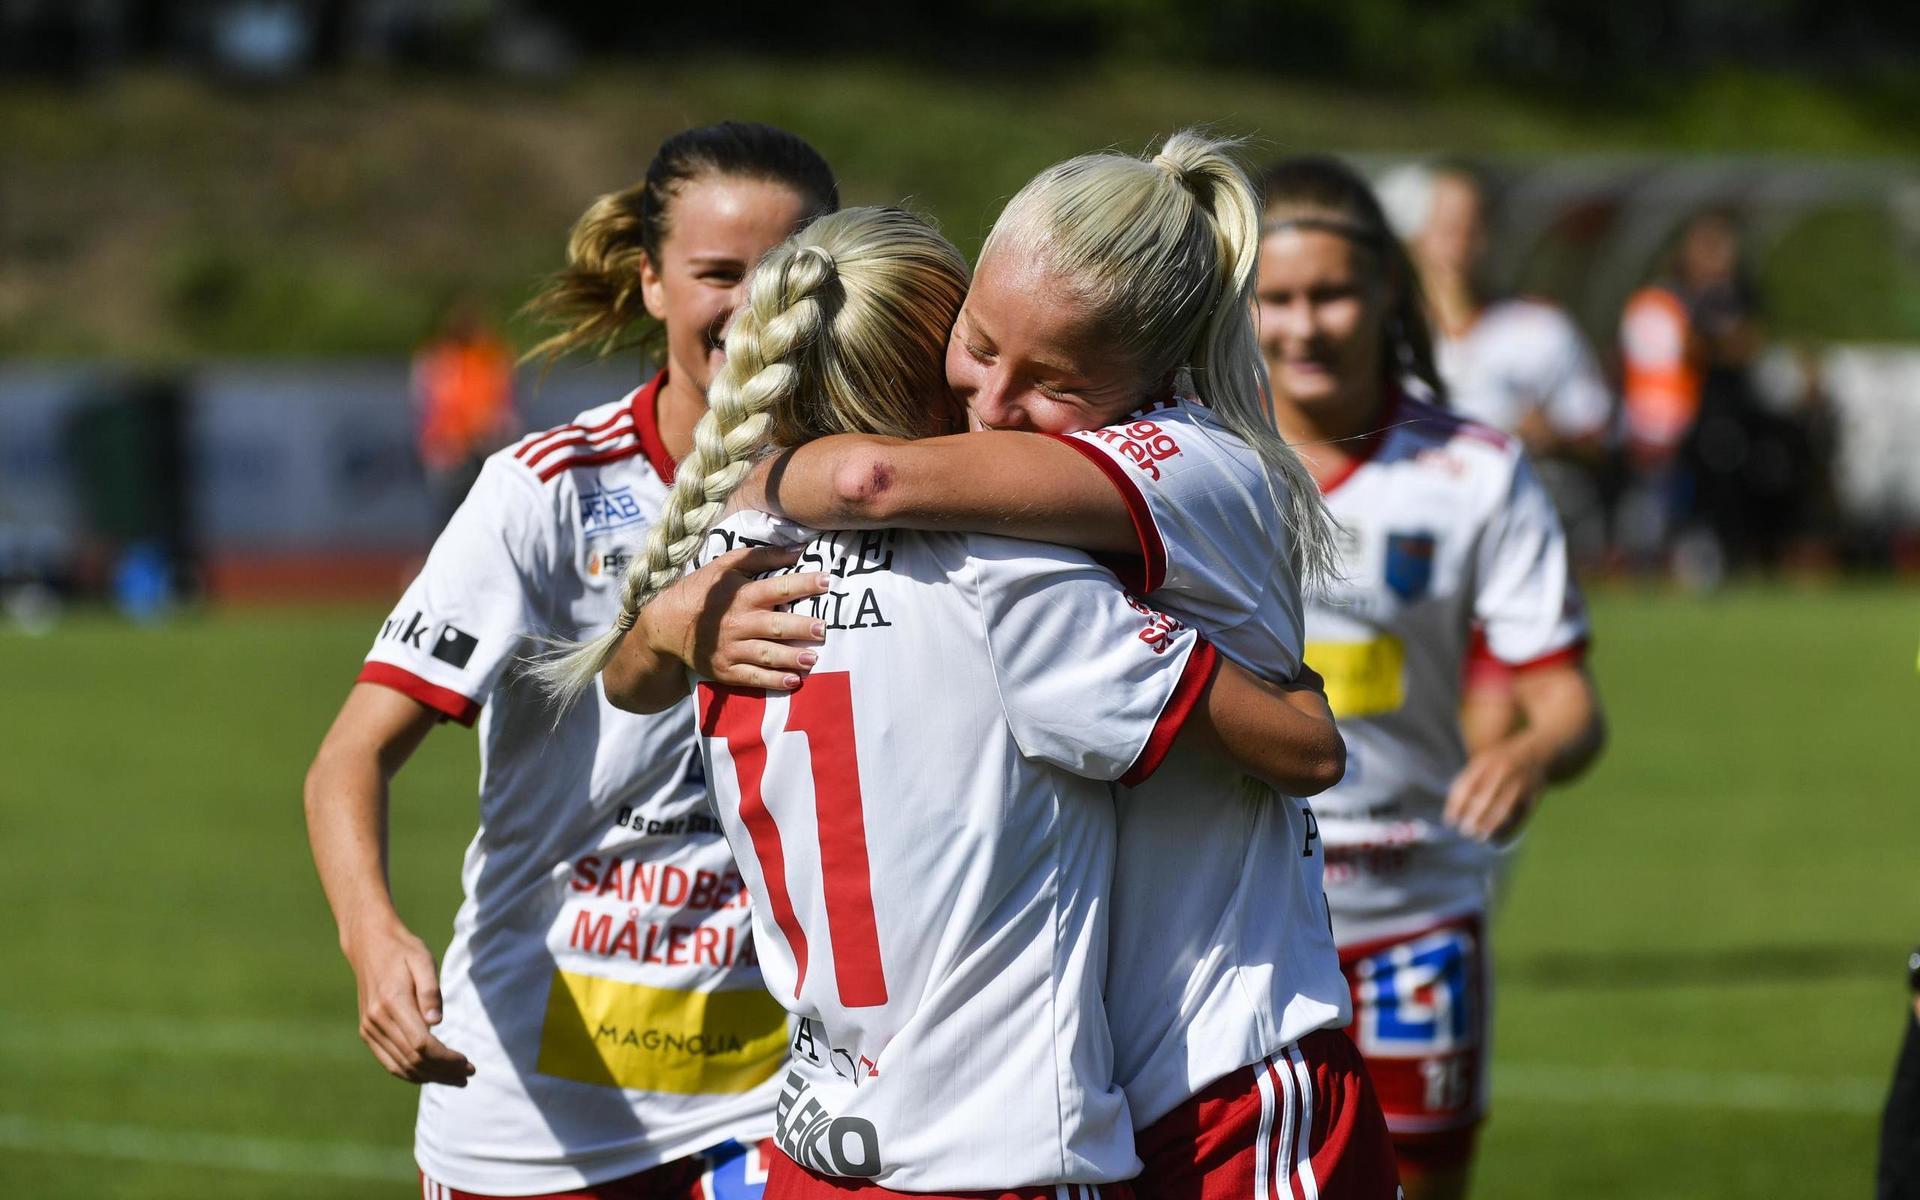 Syskonkärlek mellan målskytten Saga Holm (11) och framspelaren Sandra Holm efter ett fint samspel fram till 3–0 för Halmia i den första halvleken mot Onsala. Matchen slutade 6–1 till Halmias damer.